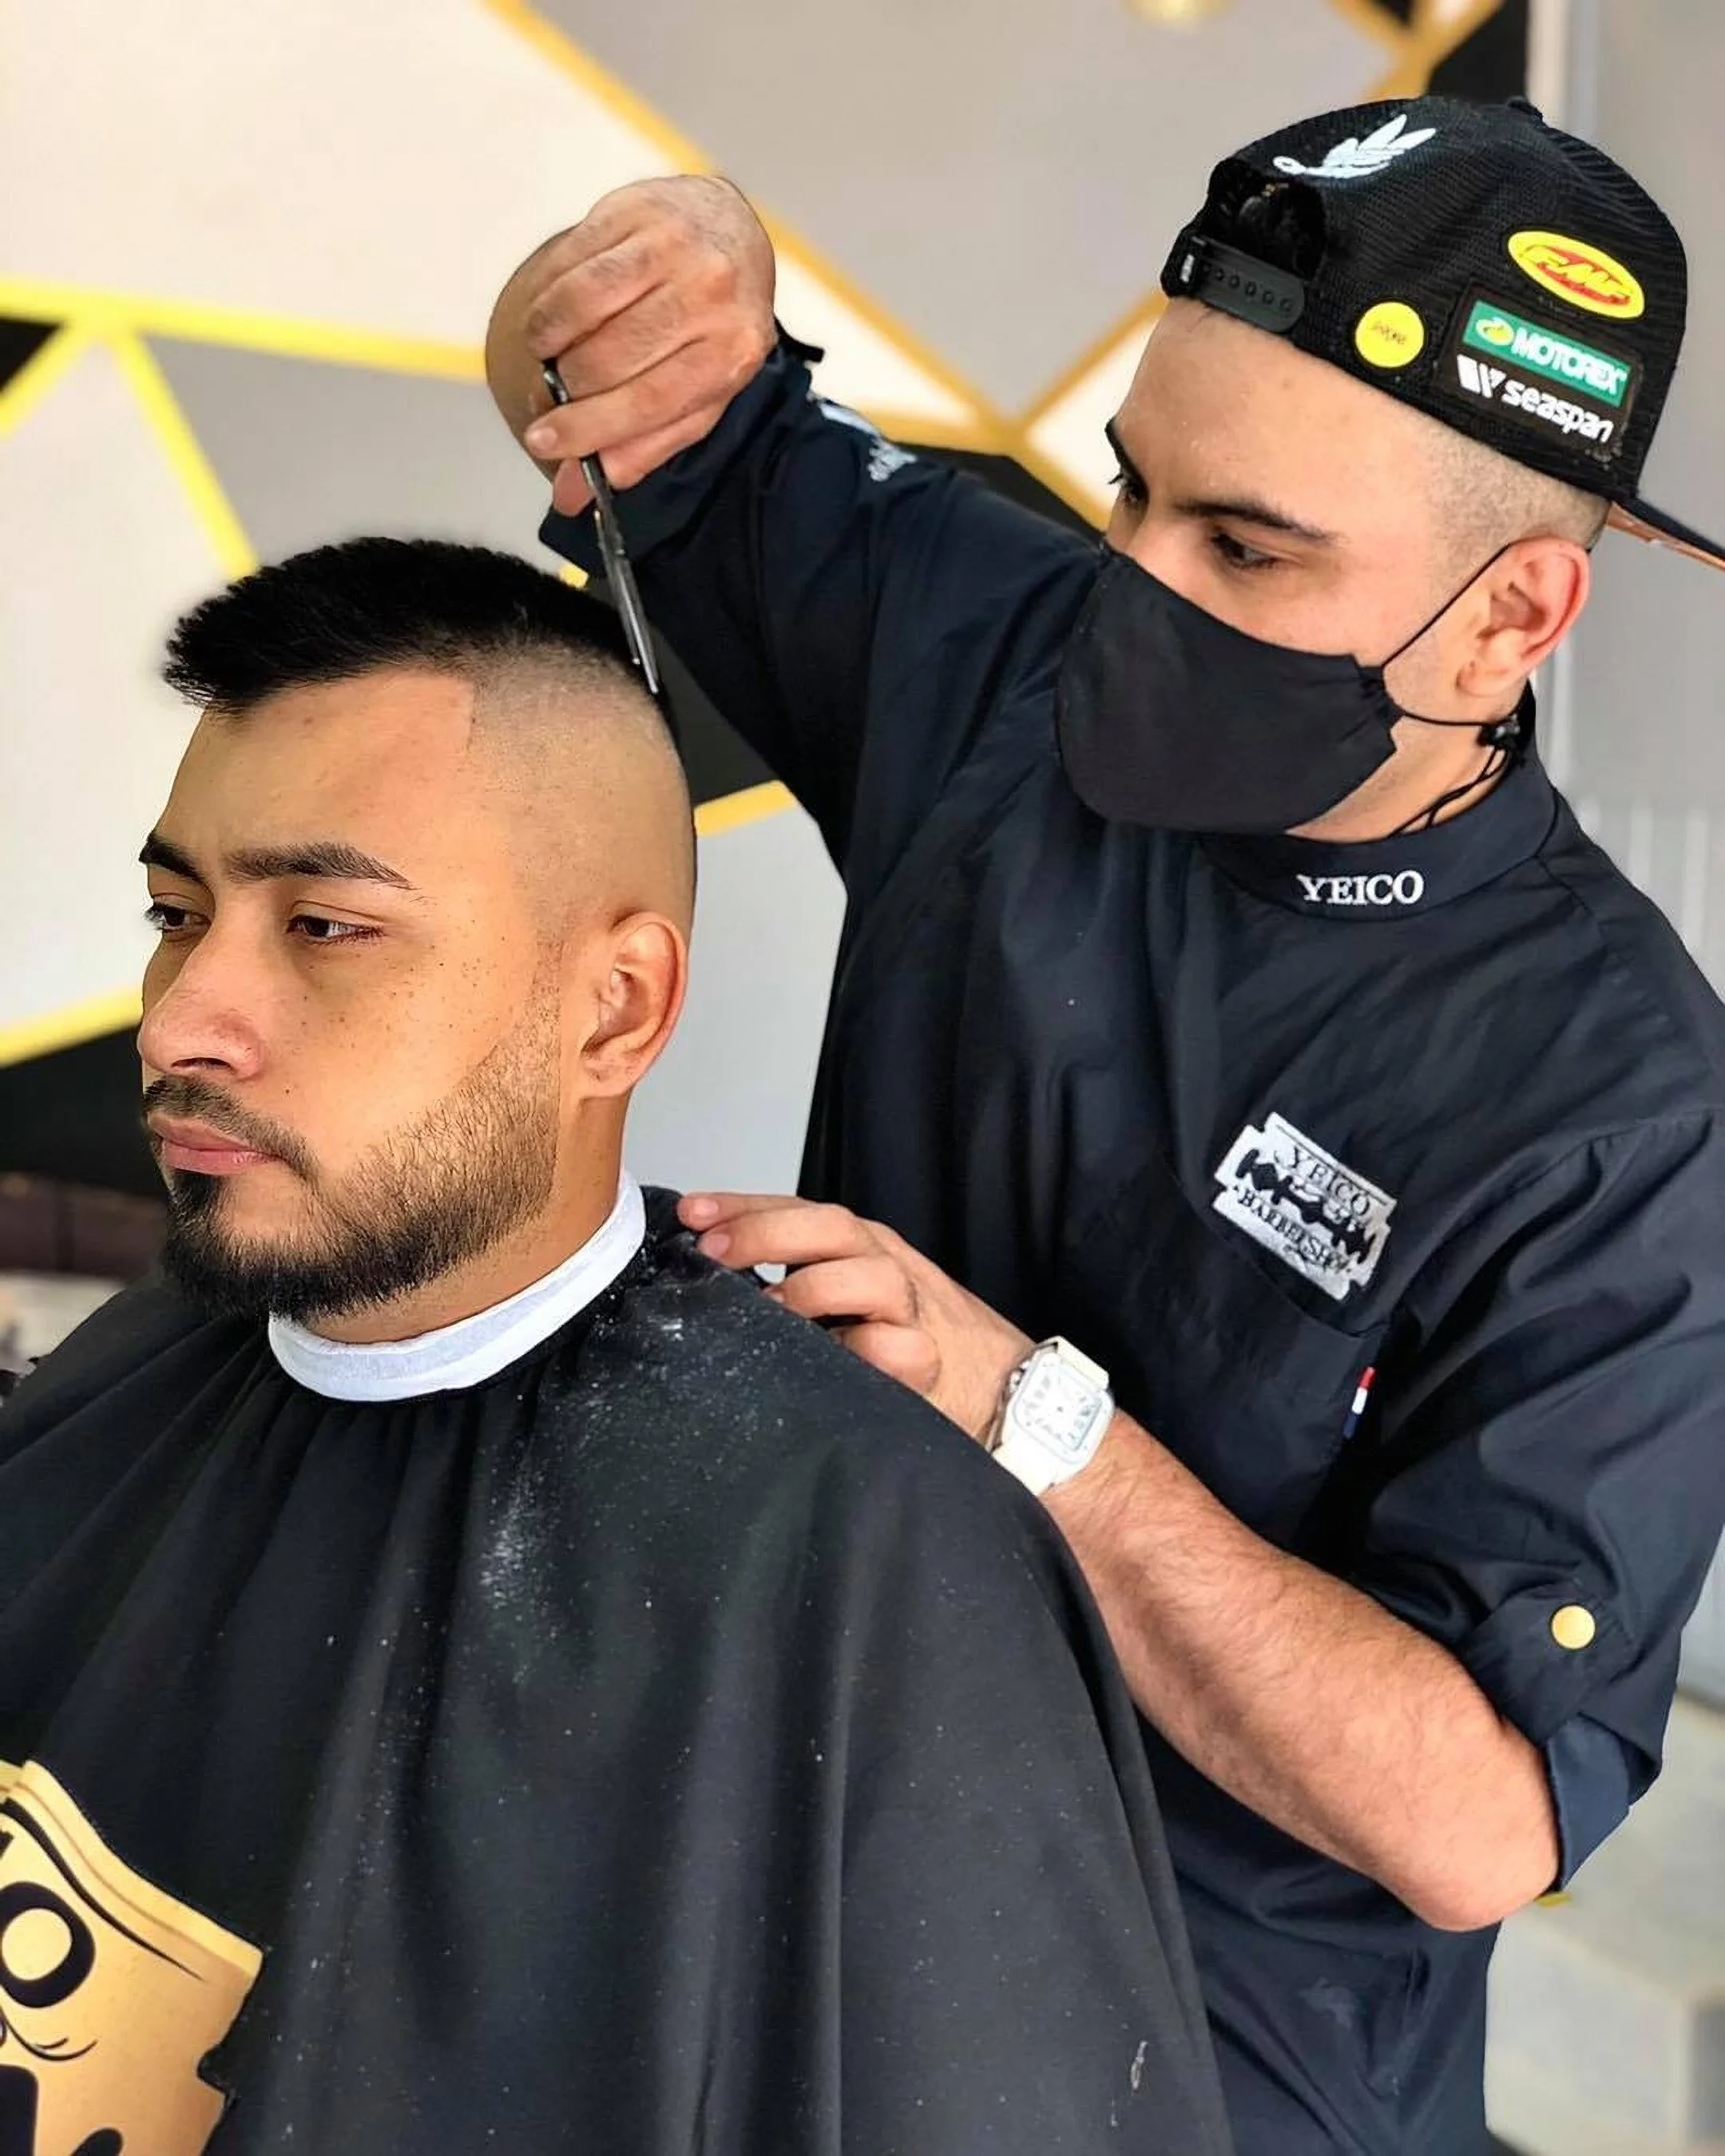 Barbería-yeico-barber-shop-7640